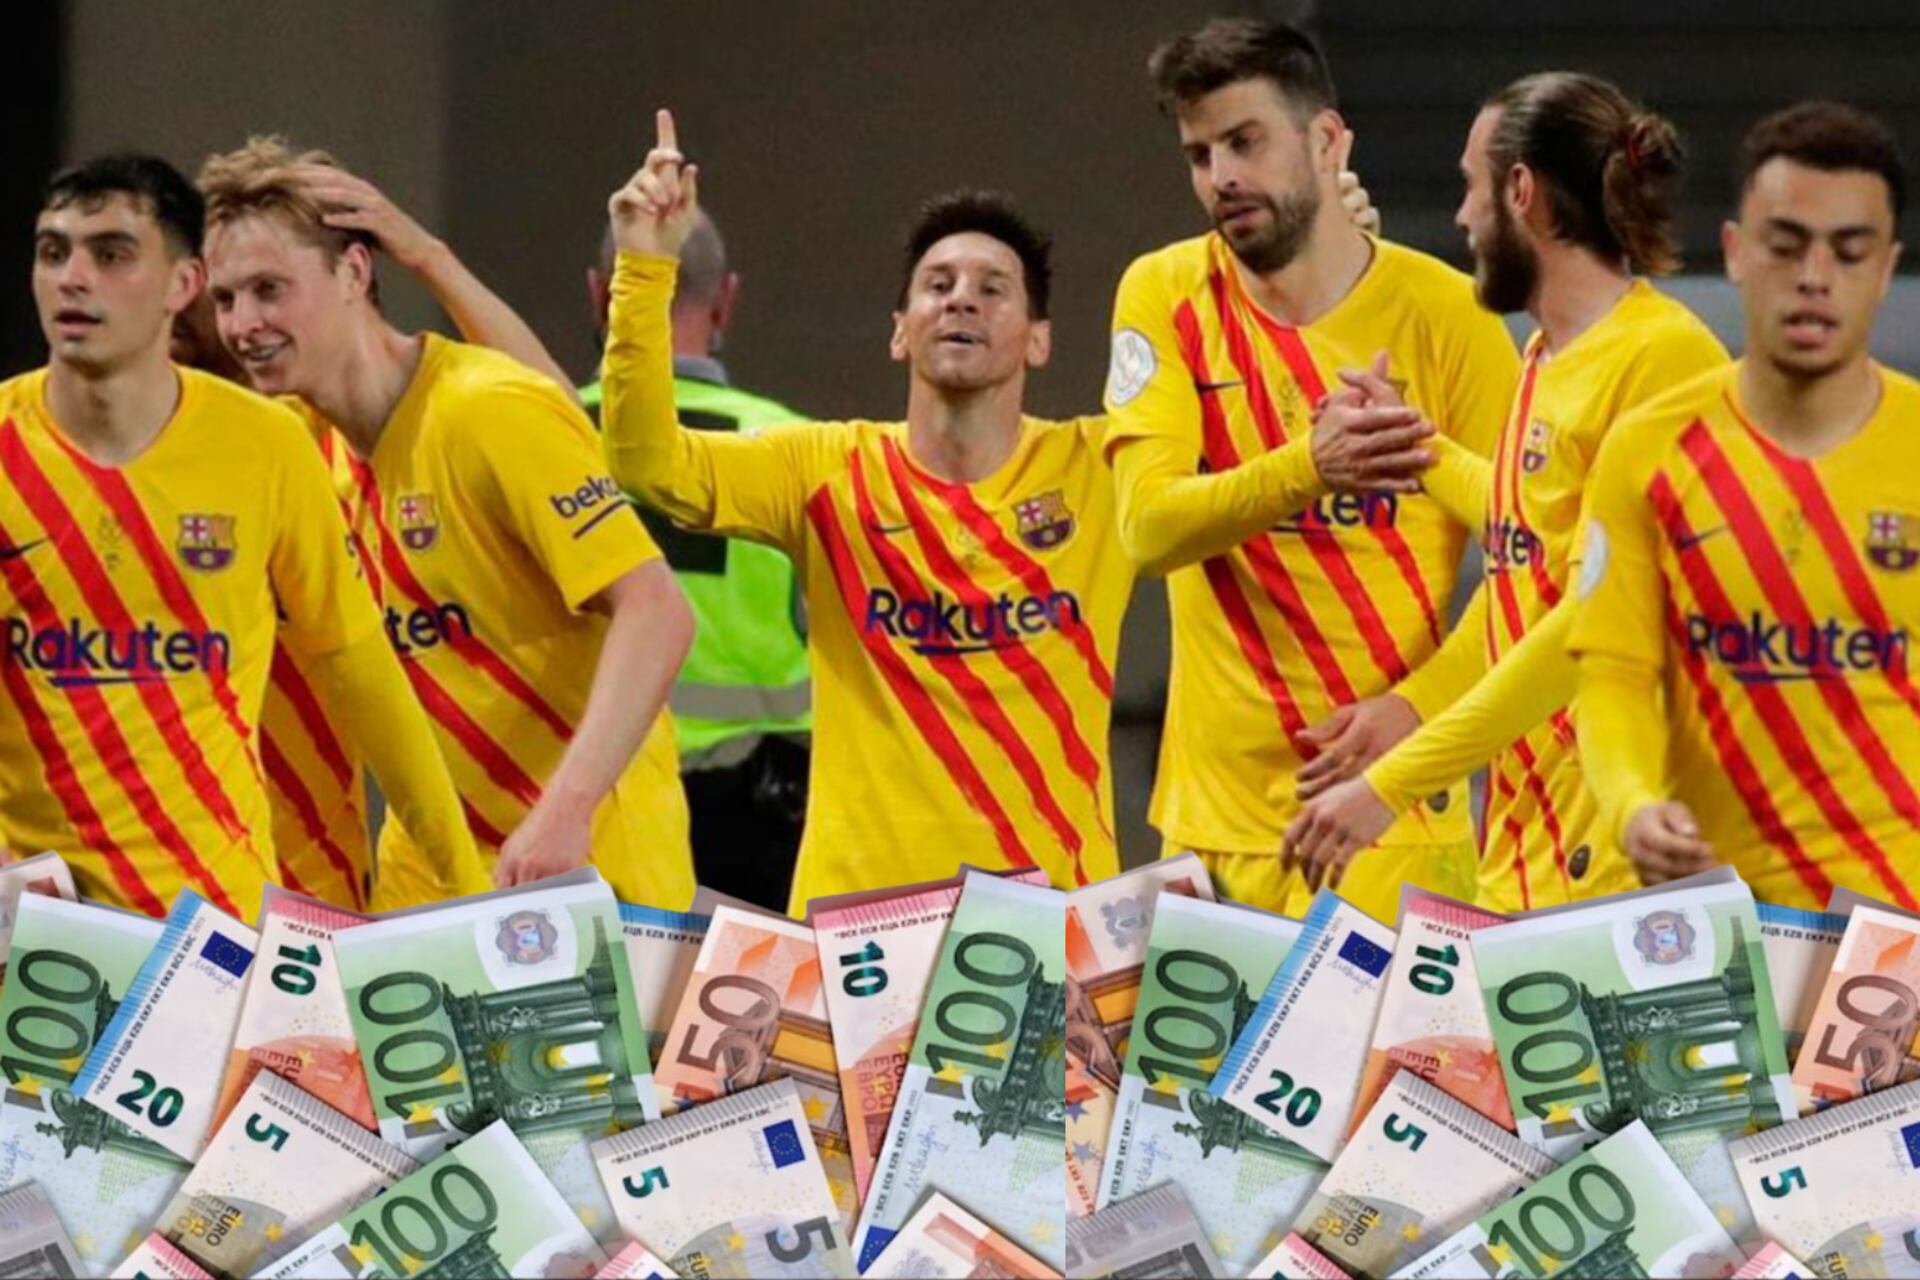 Dijeron que amaban al Barça pero aún cobran sueldo Messi y estos 3 jugadores más